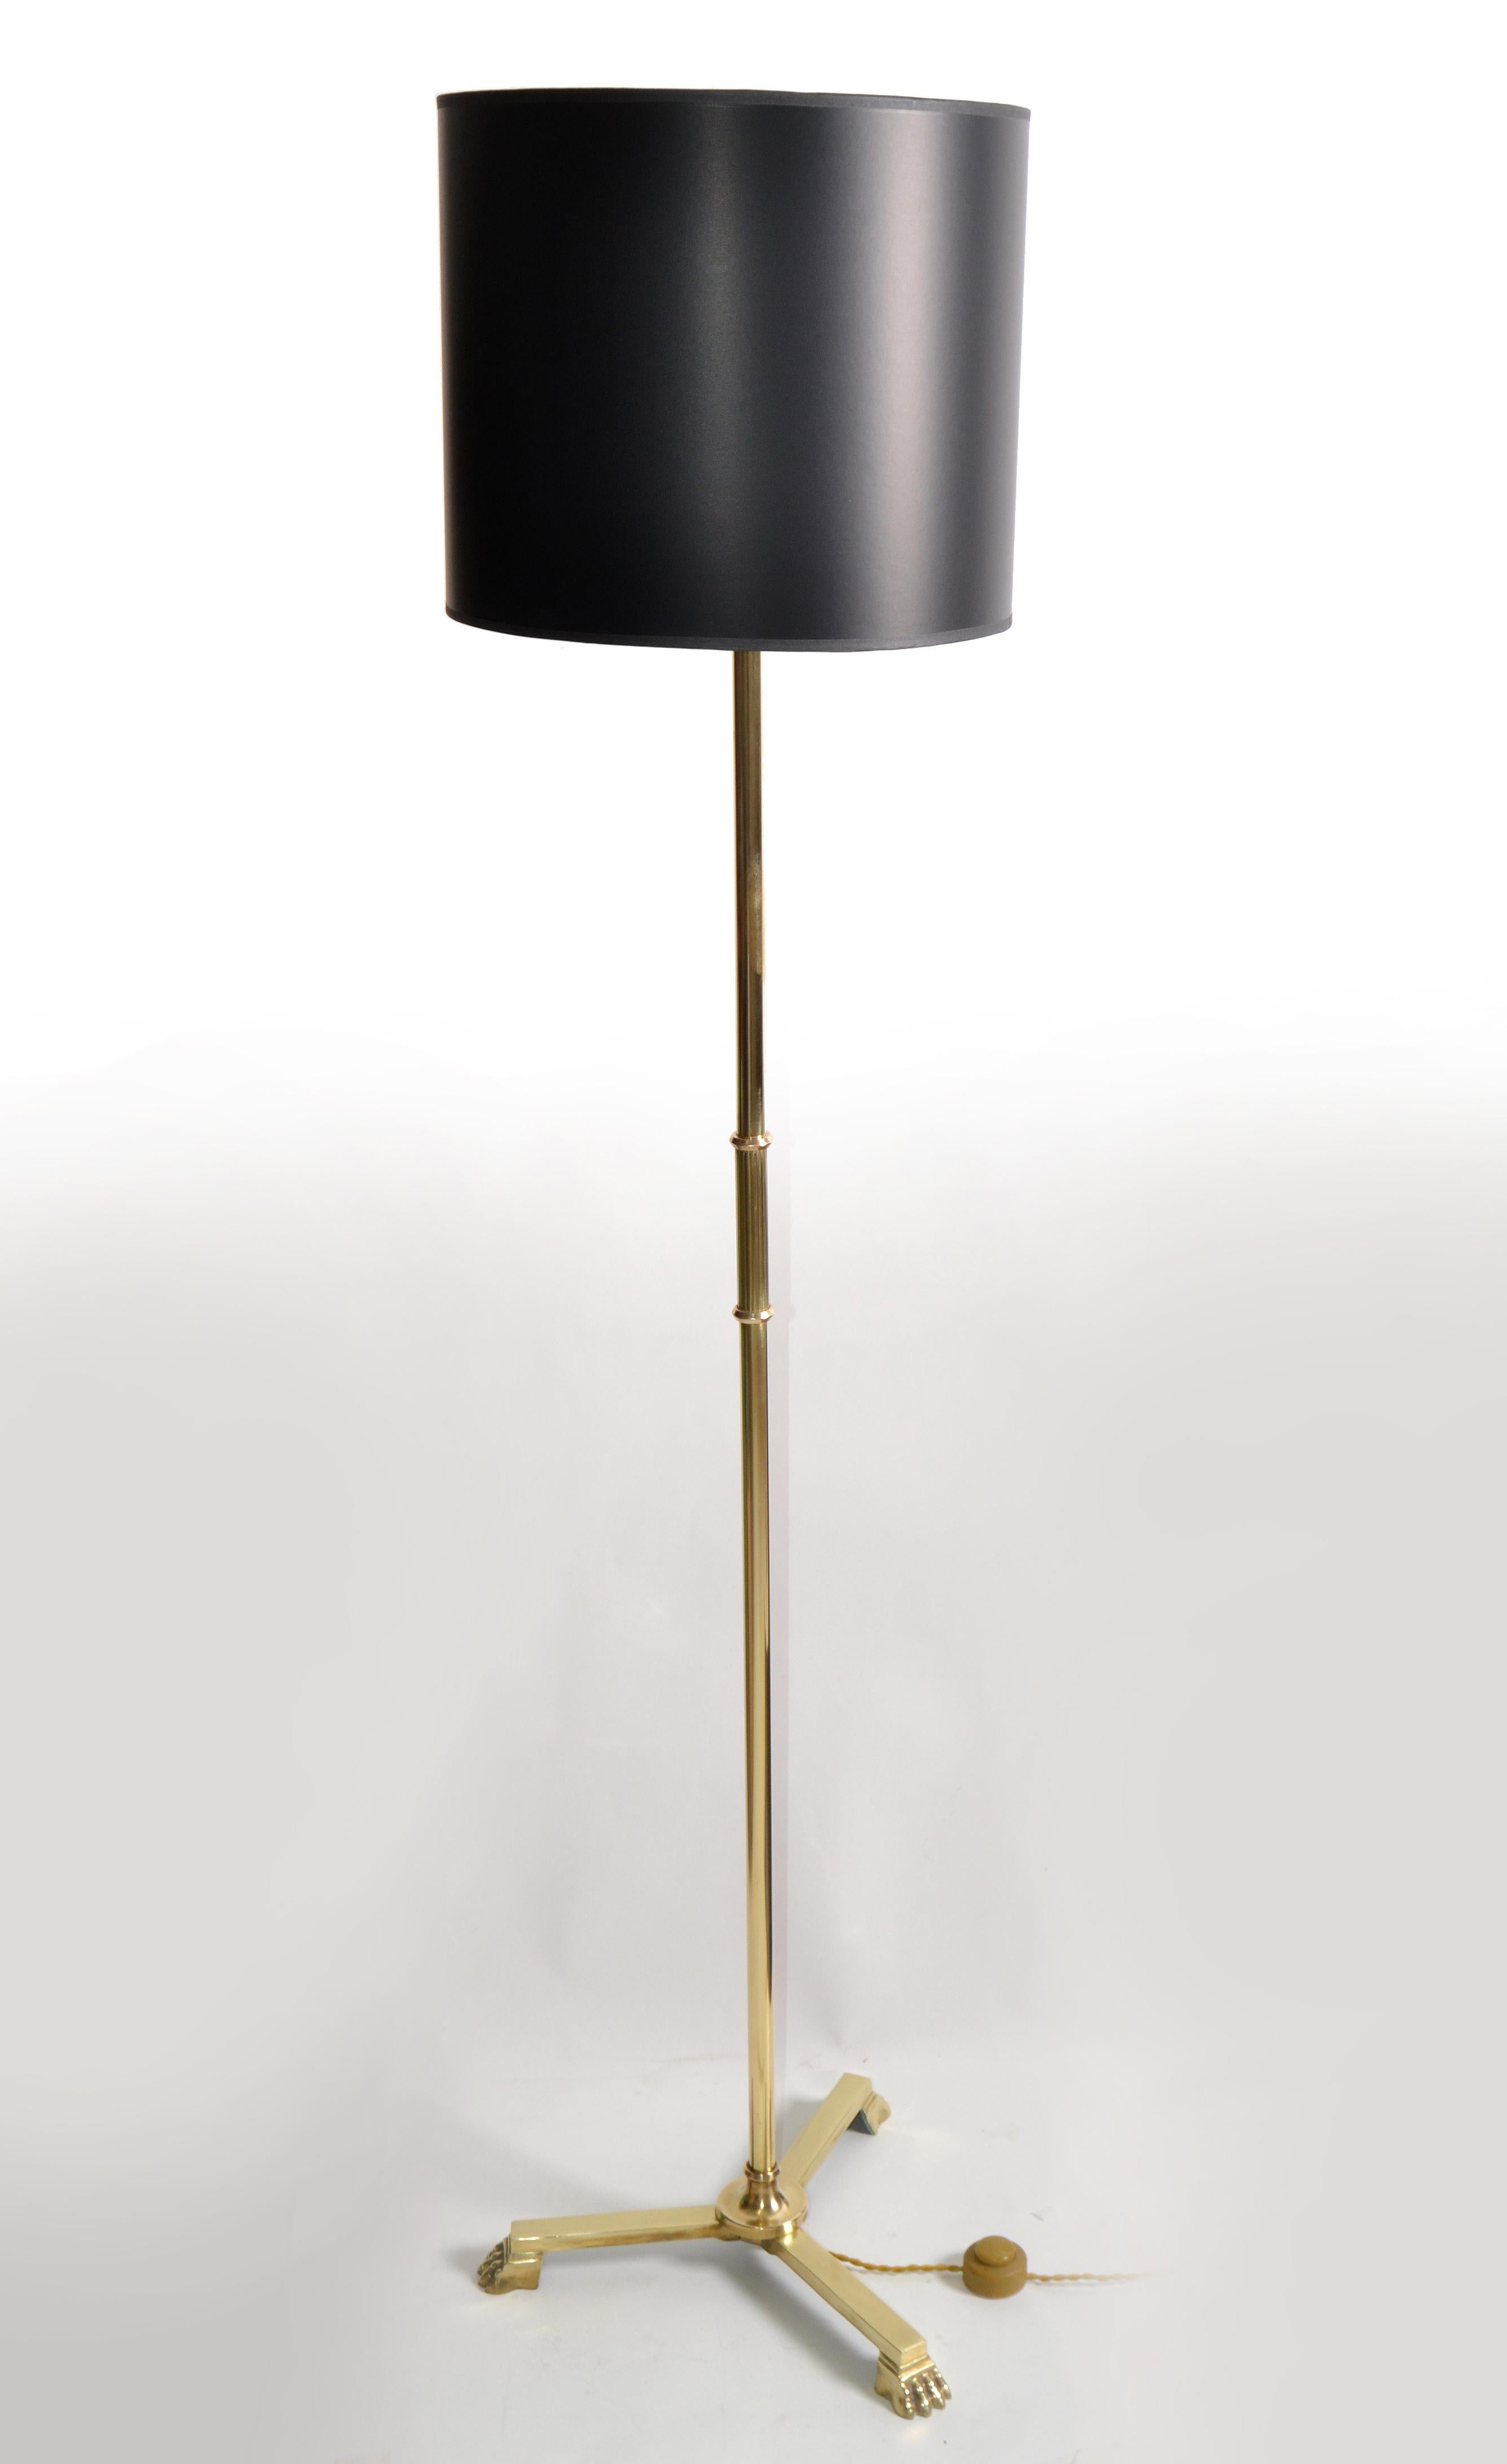 Neoklassische Stehlampe aus Bronze mit zwei Patinas und dreibeinigem Klauenfuß, hergestellt in Frankreich in den 1950er Jahren.
Original europäische verkabelt nimmt eine normale Glühbirne oder LED kommt mit einem Fußschalter.
Verkauft mit Clip auf